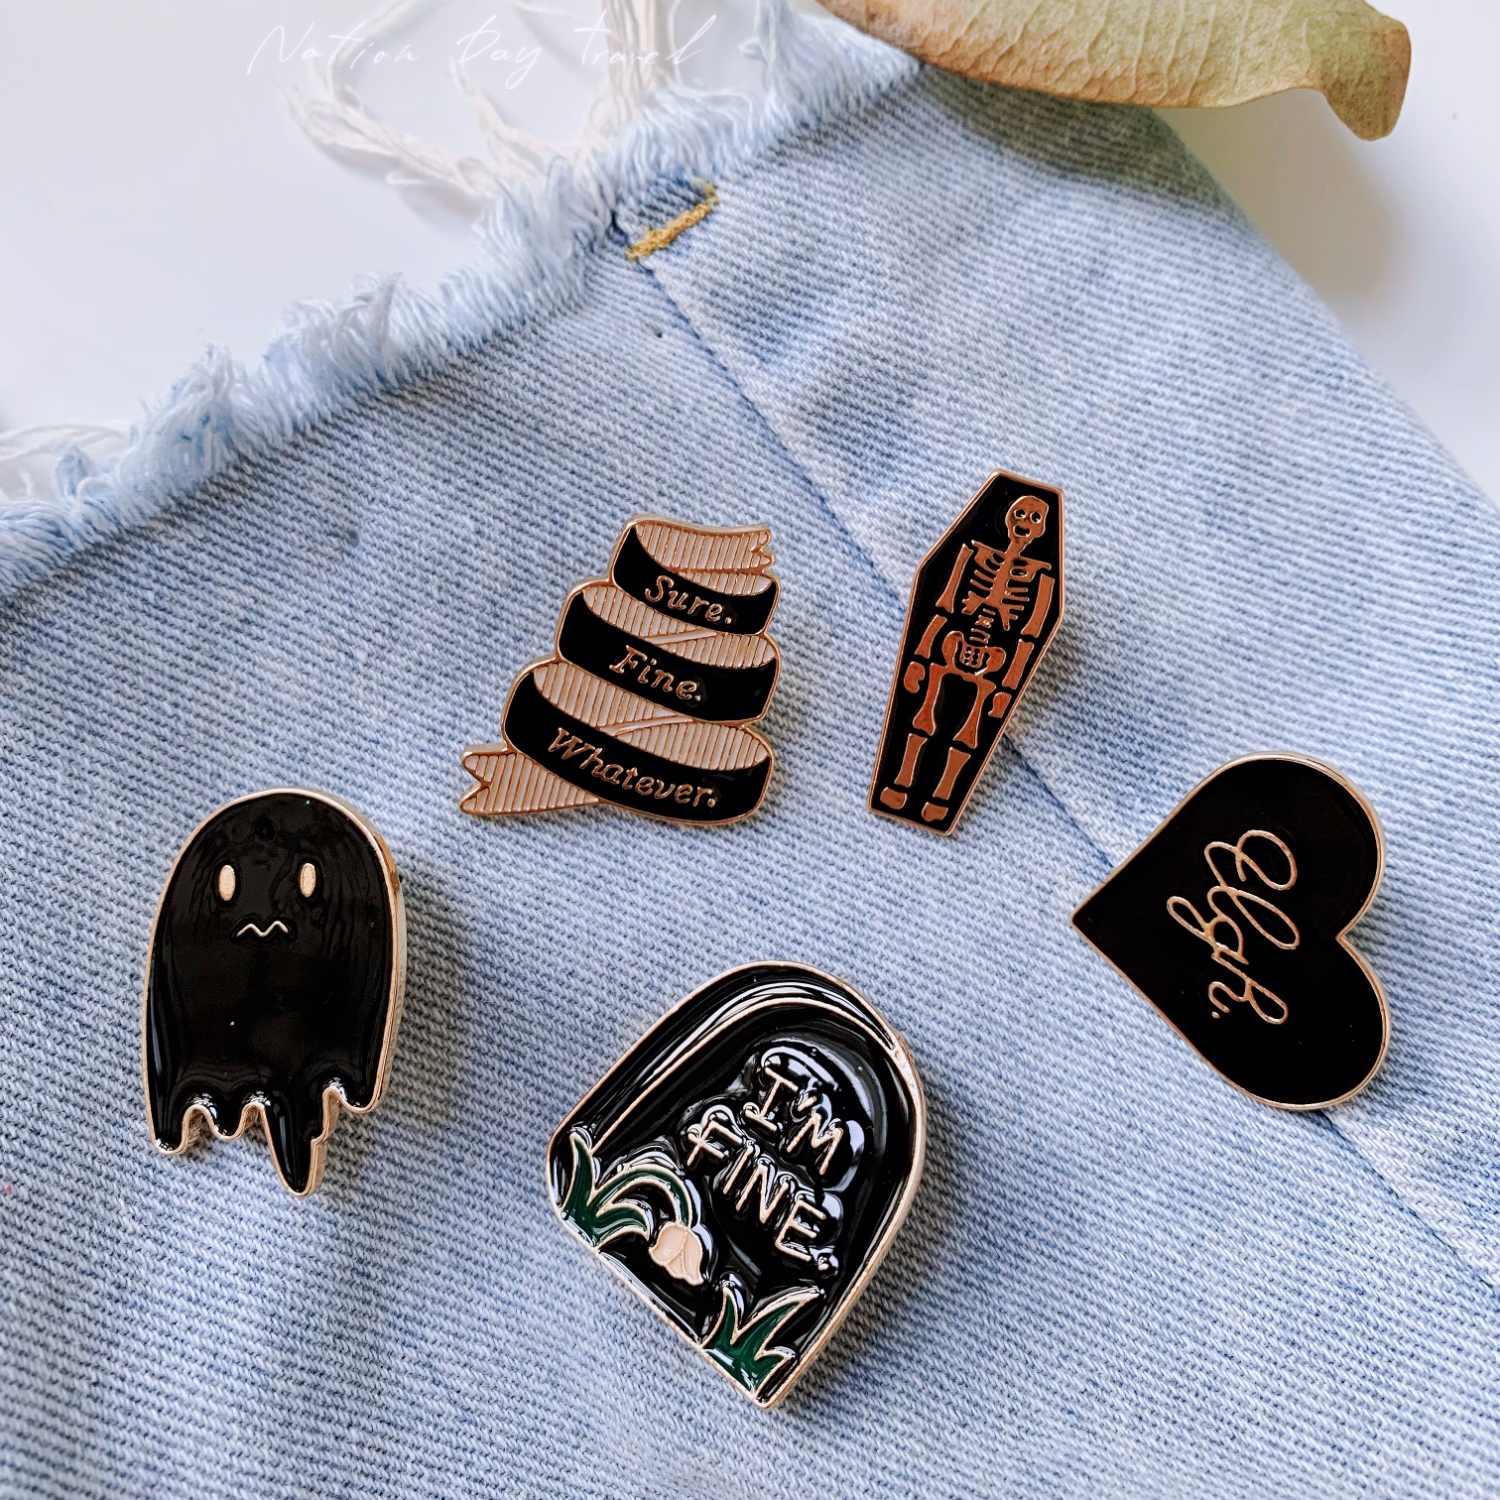 Metal Badge Pins Accessories, Metal Pin Clothes, Metal Clothes Bag